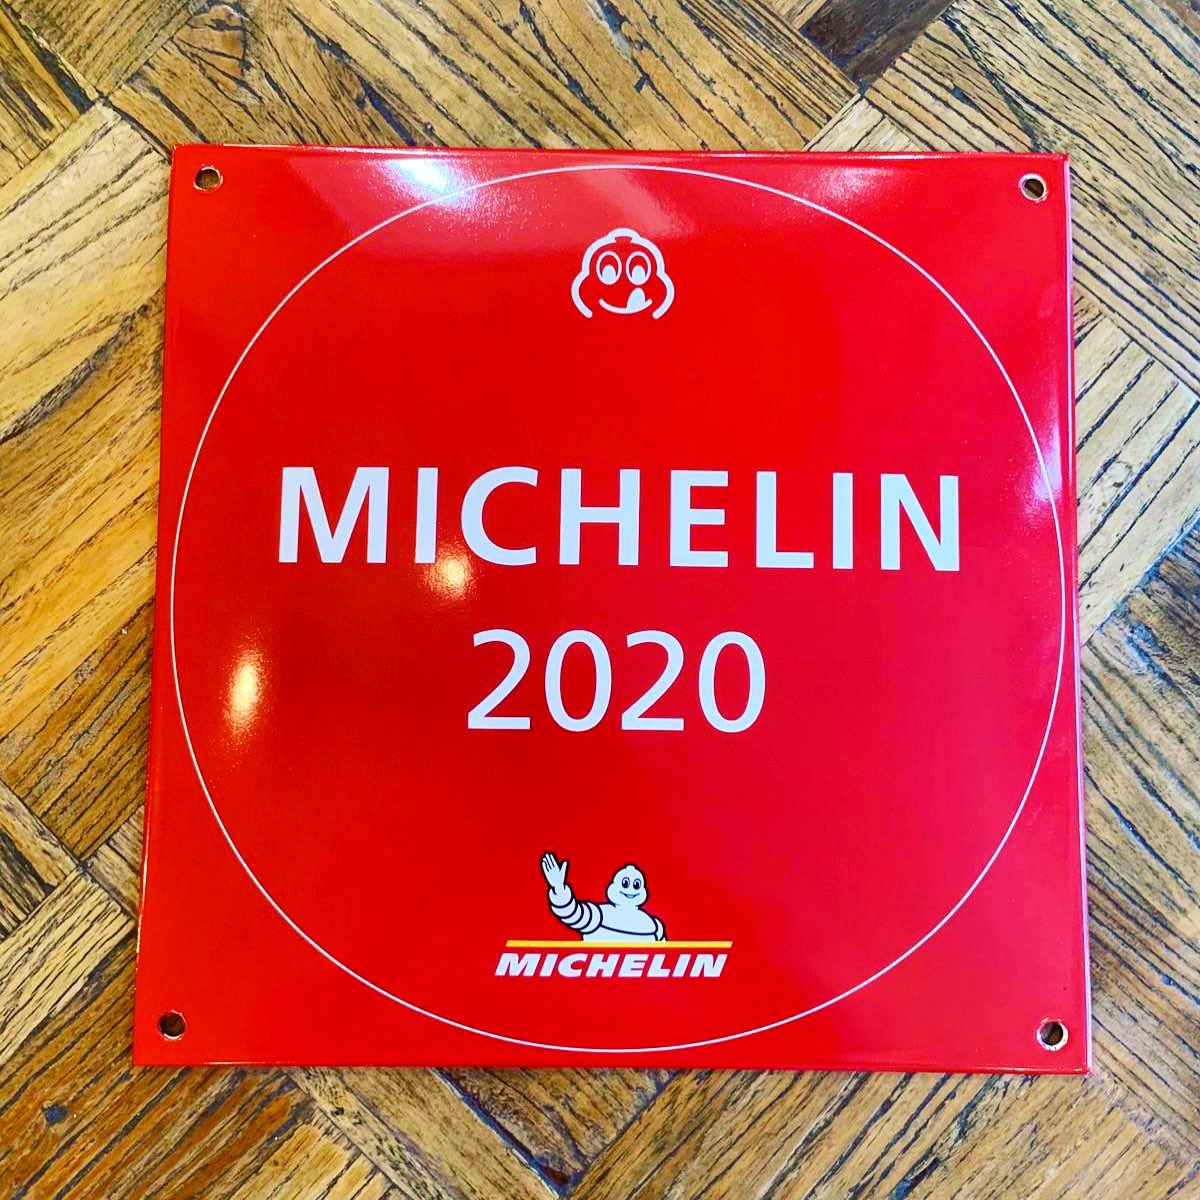 It’s finally arrived ready to put up!👌🏼@MichelinGuideUK #Michelinbibgourmand #michelin2020 #michelin #Newcastle #NE1